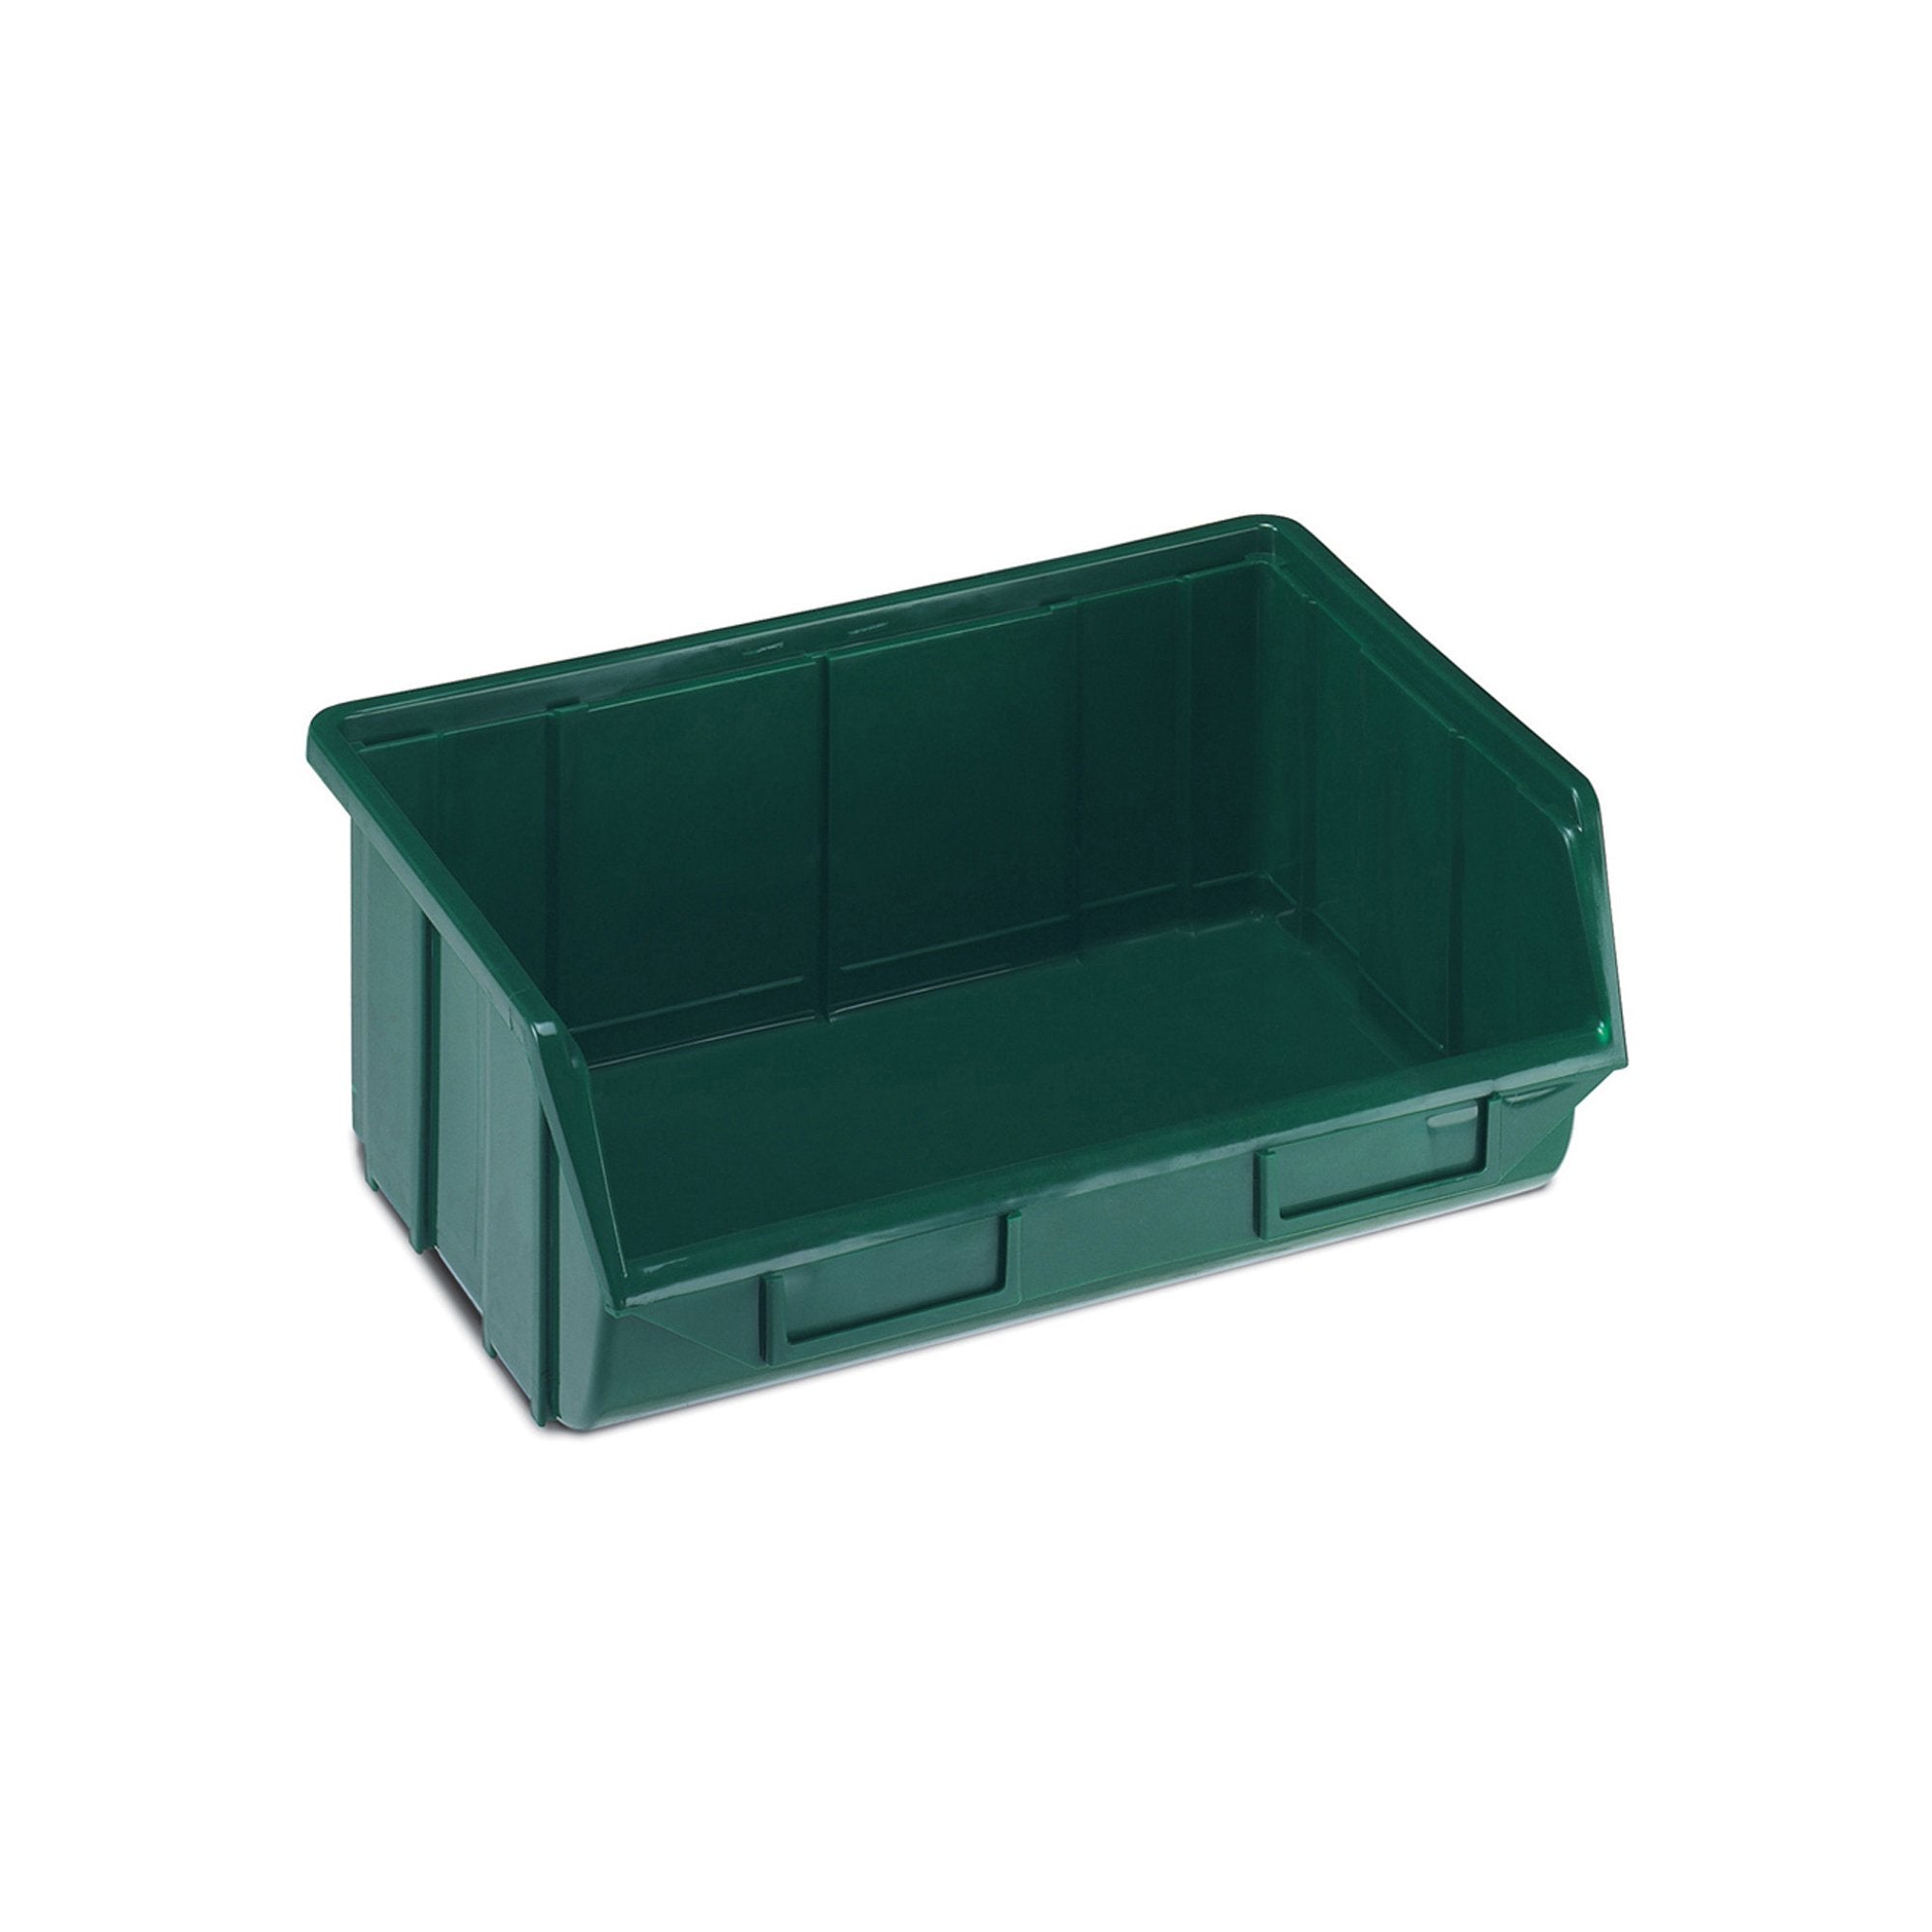 terry-vaschetta-ecobox-112-bis-verde